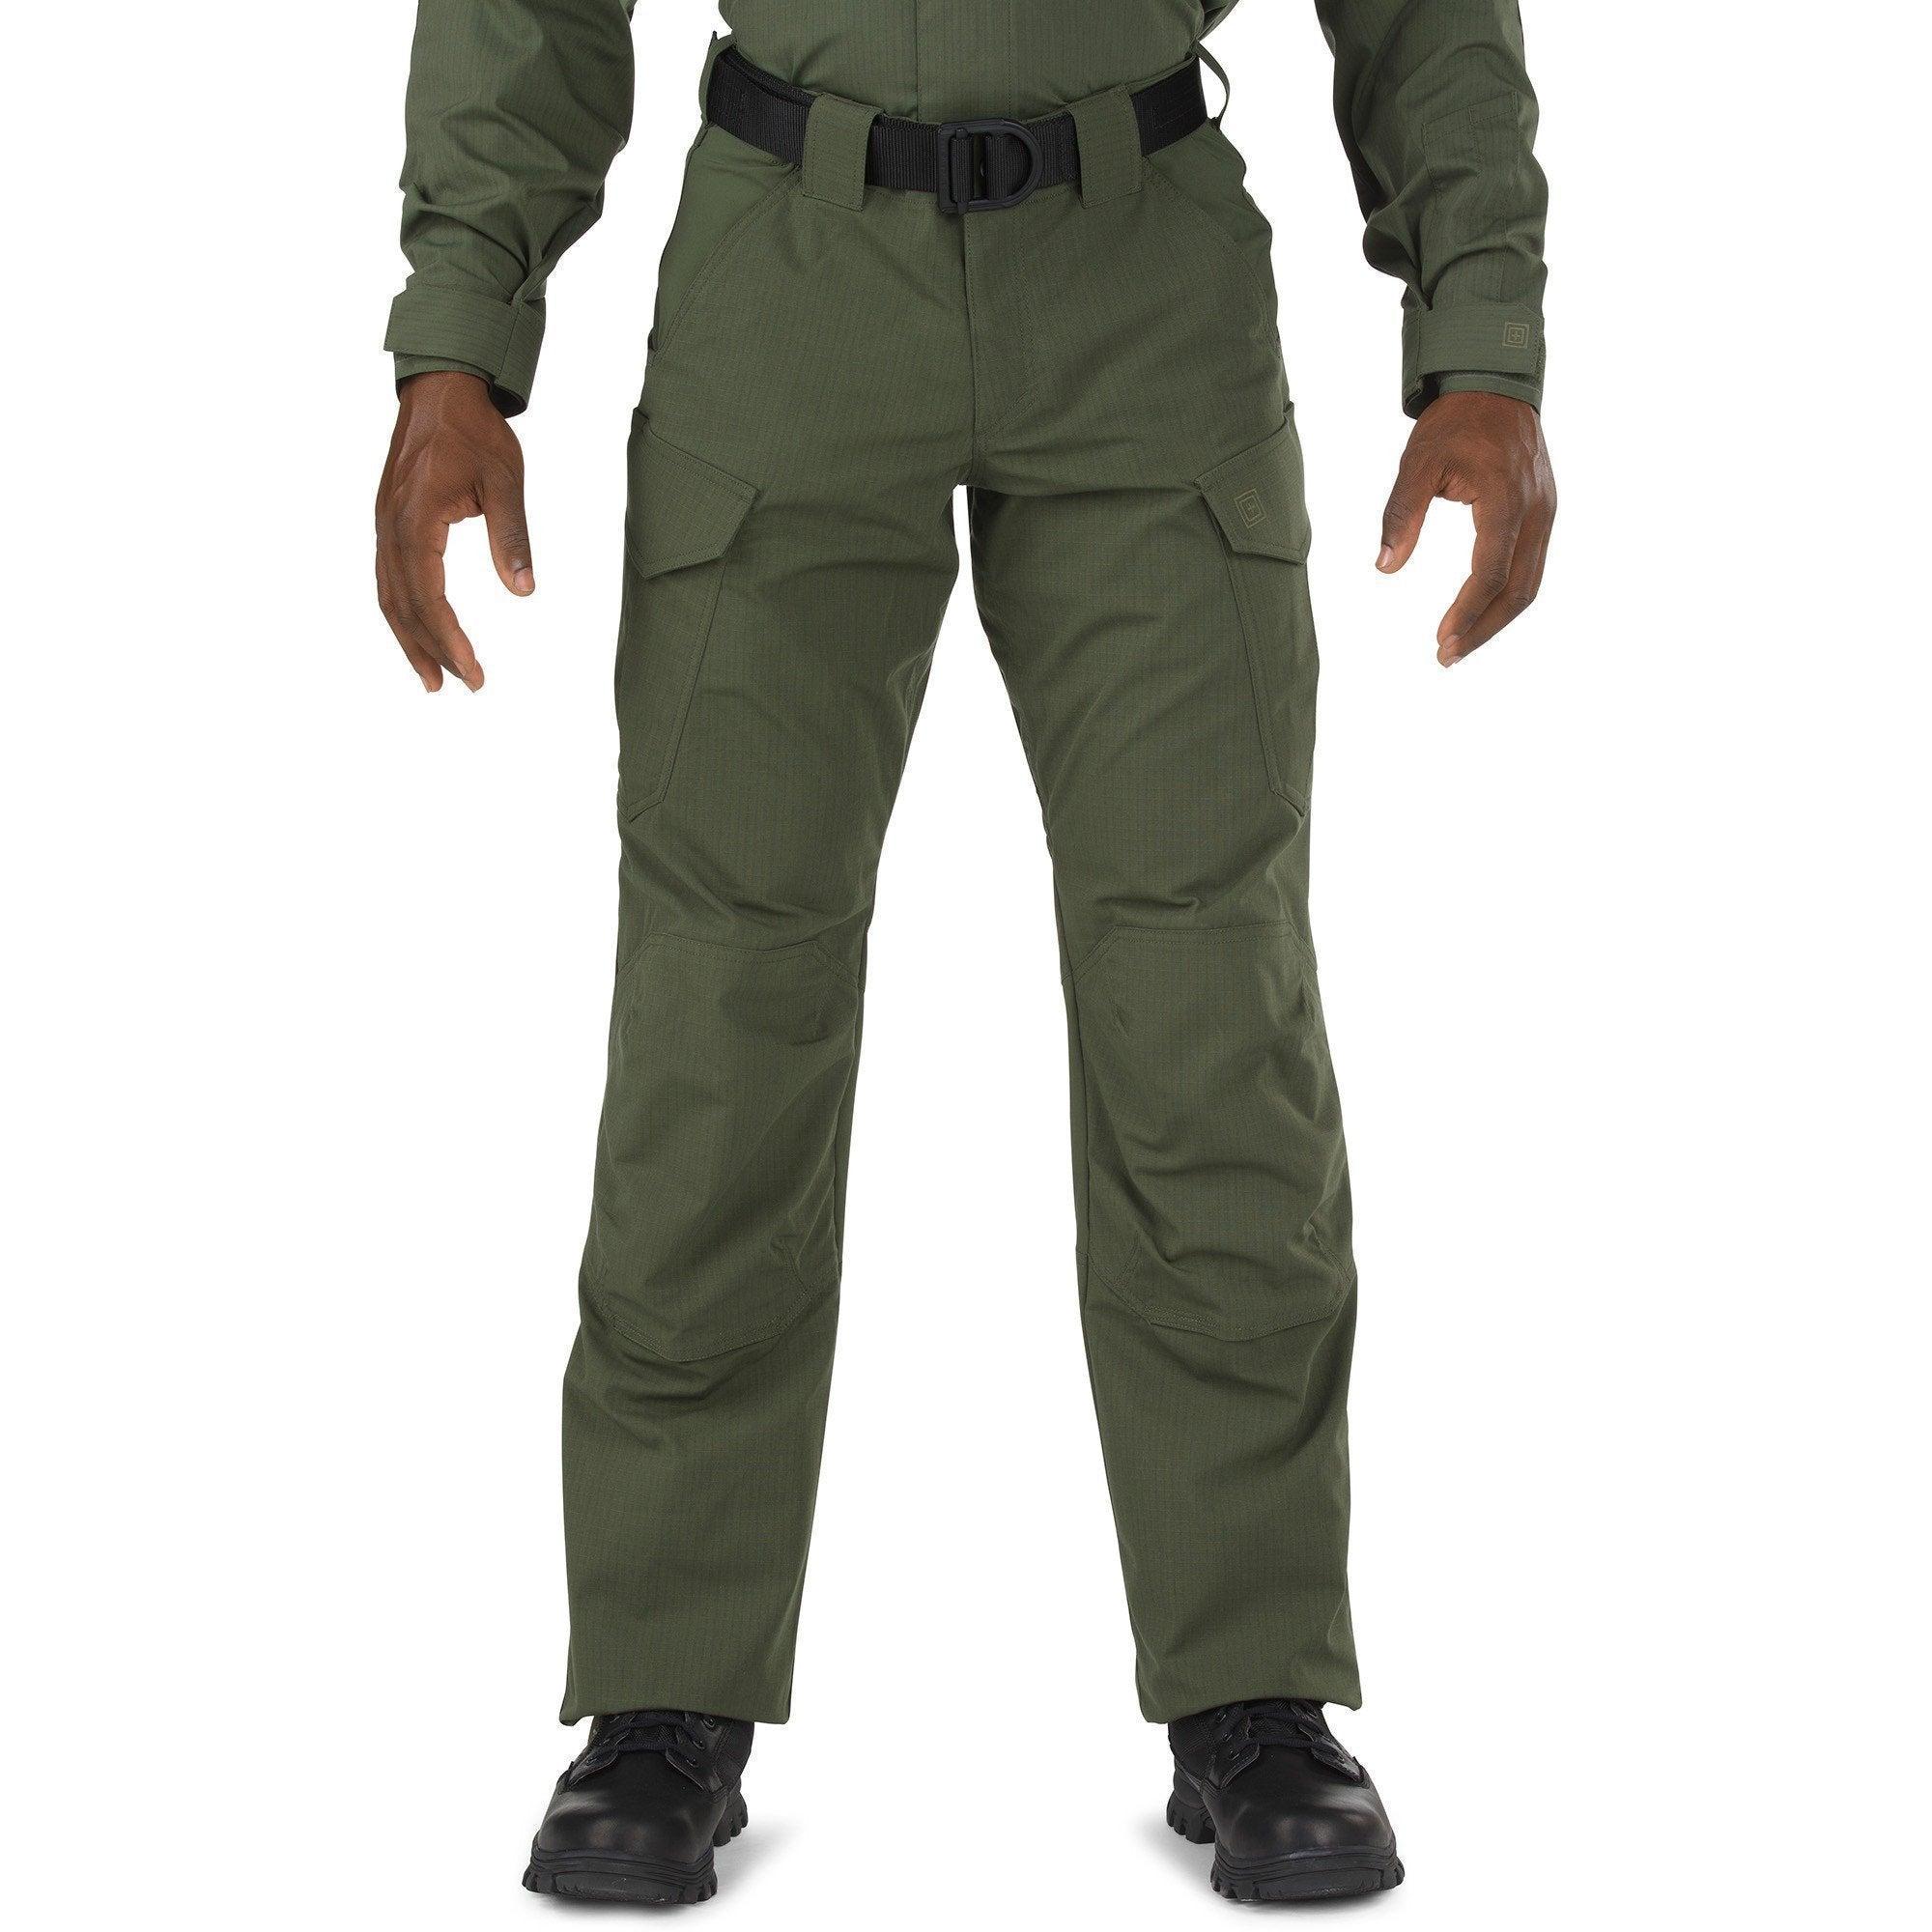 5.11 Tactical Stryke TDU Pants - TDU Green Pants 5.11 Tactical Tactical Gear Supplier Tactical Distributors Australia